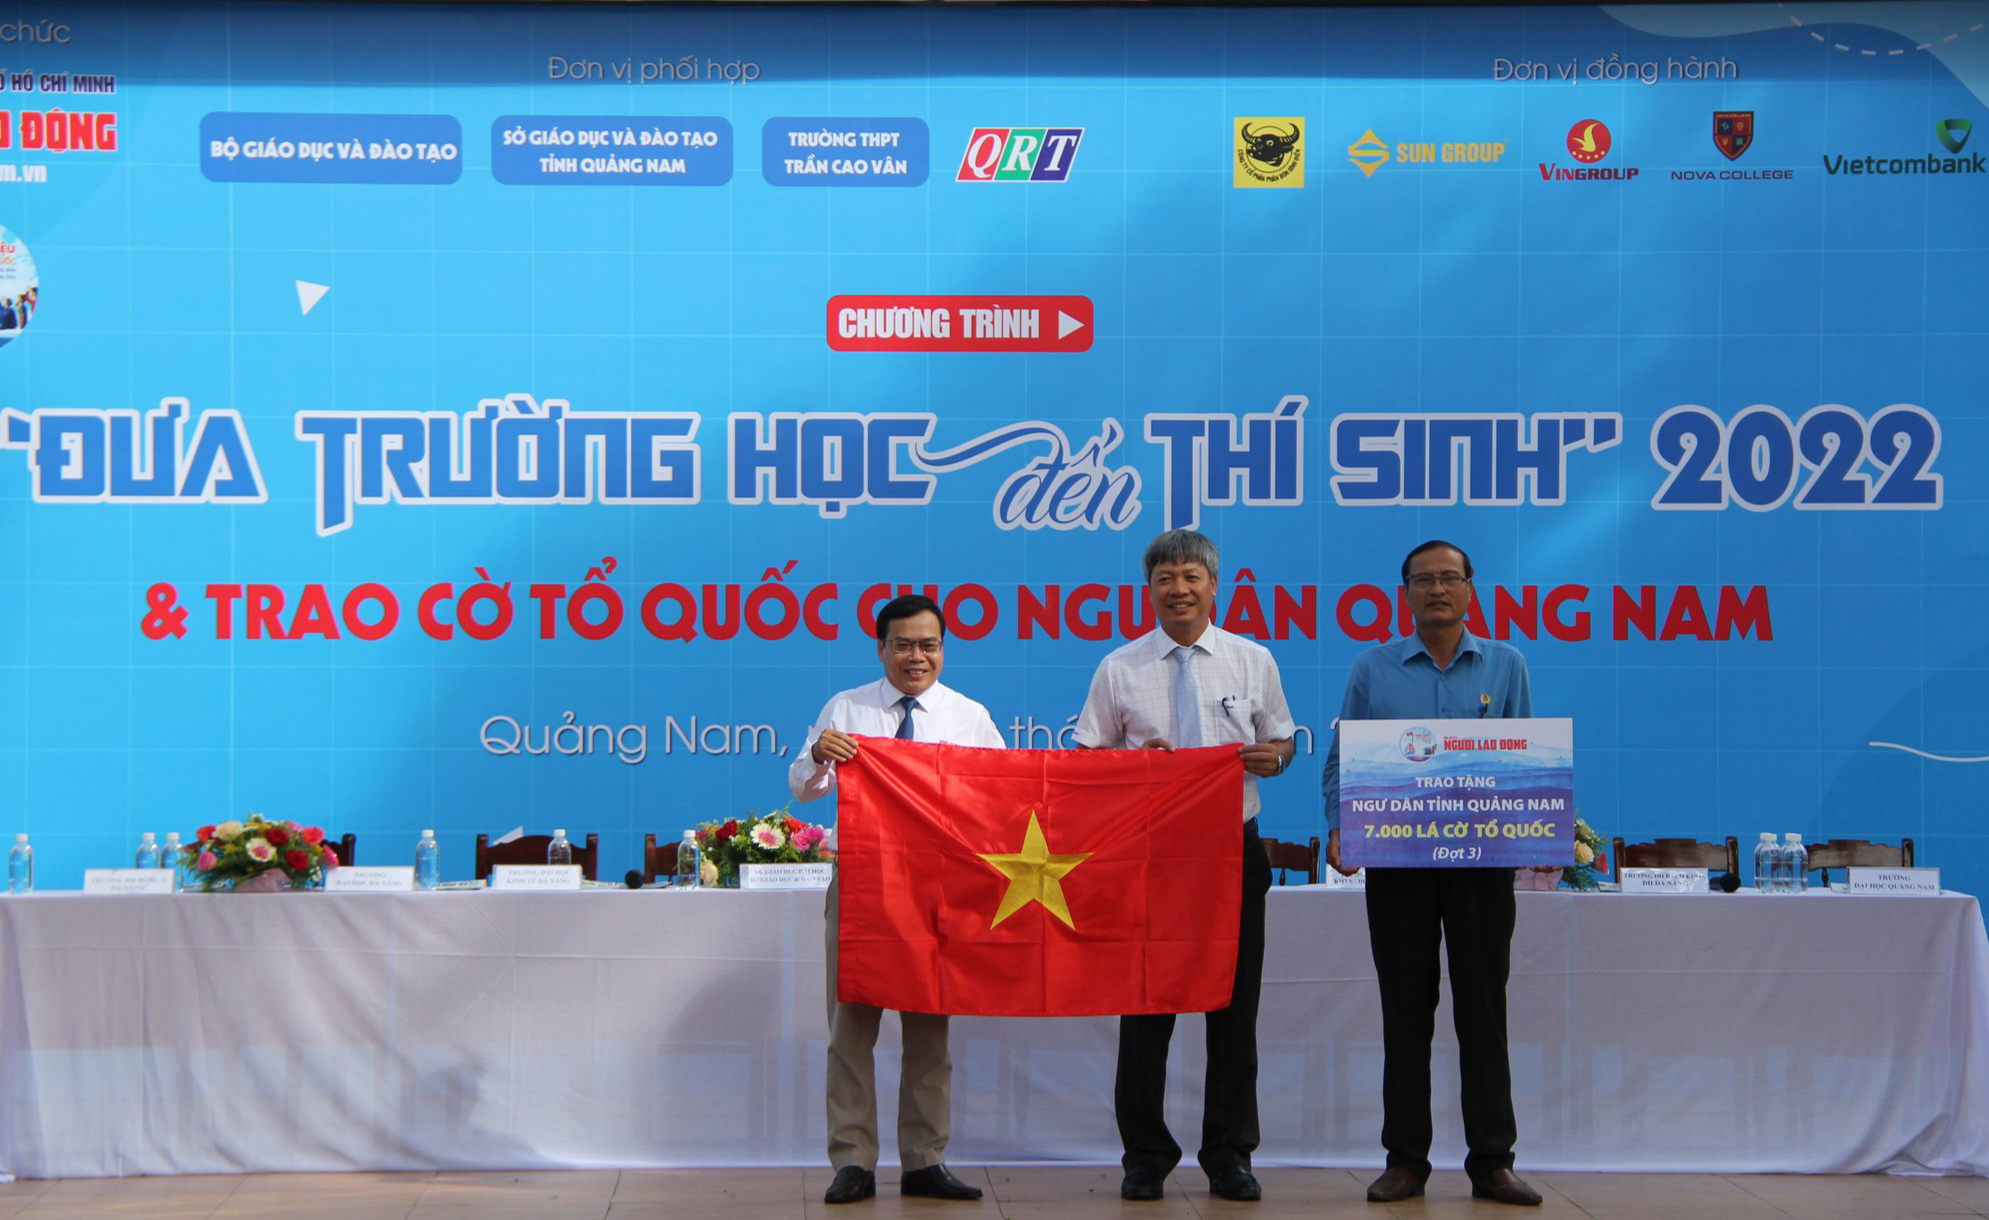 Trao thêm 7.000 lá cờ Tổ quốc cho ngư dân Quảng Nam - Ảnh 1.